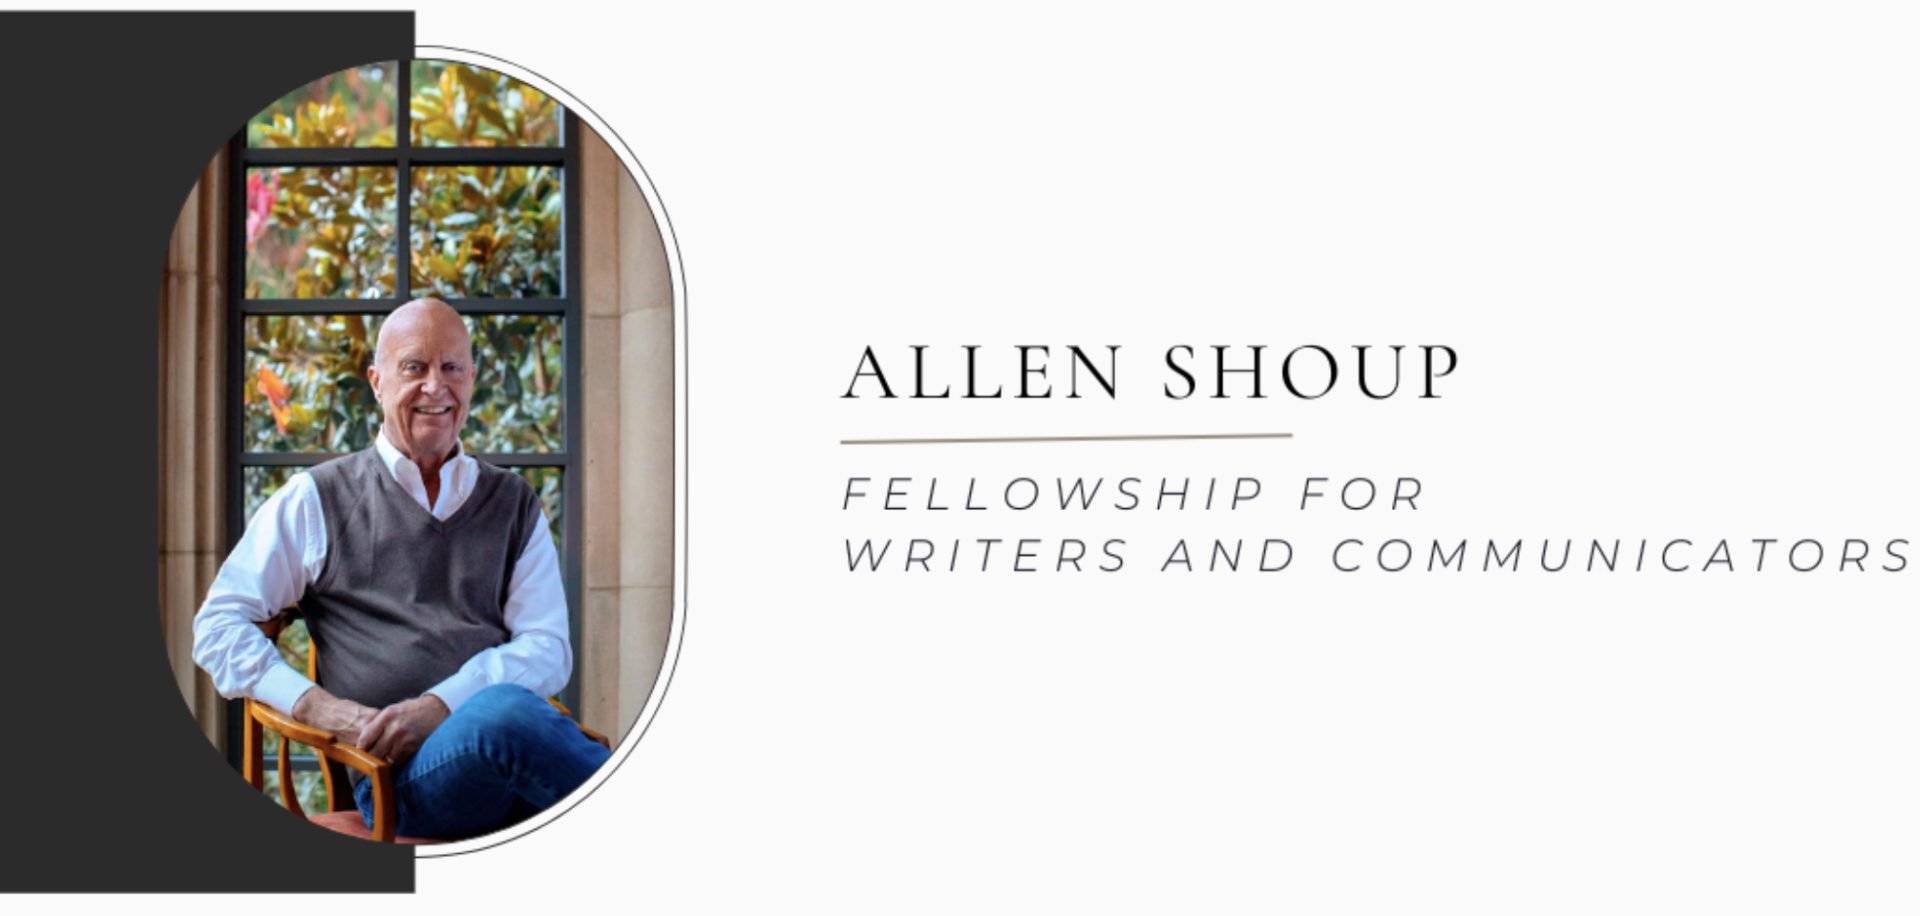 Allen Shoup Memorial Fellowship